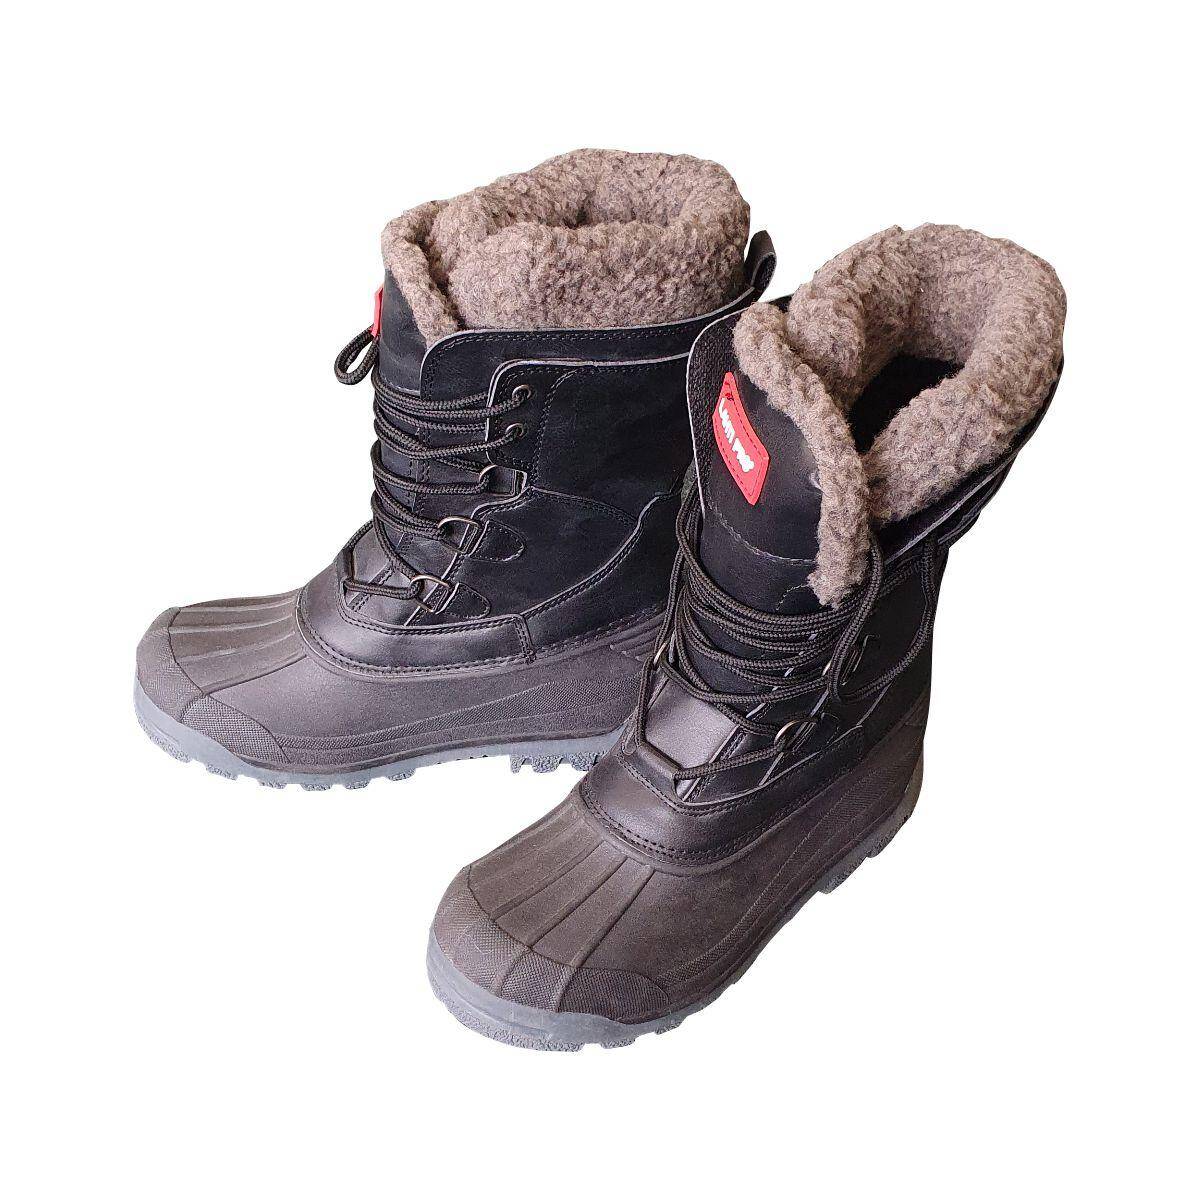 Buty zimowe - śniegowce męskie, rozmiar 39 L3080239